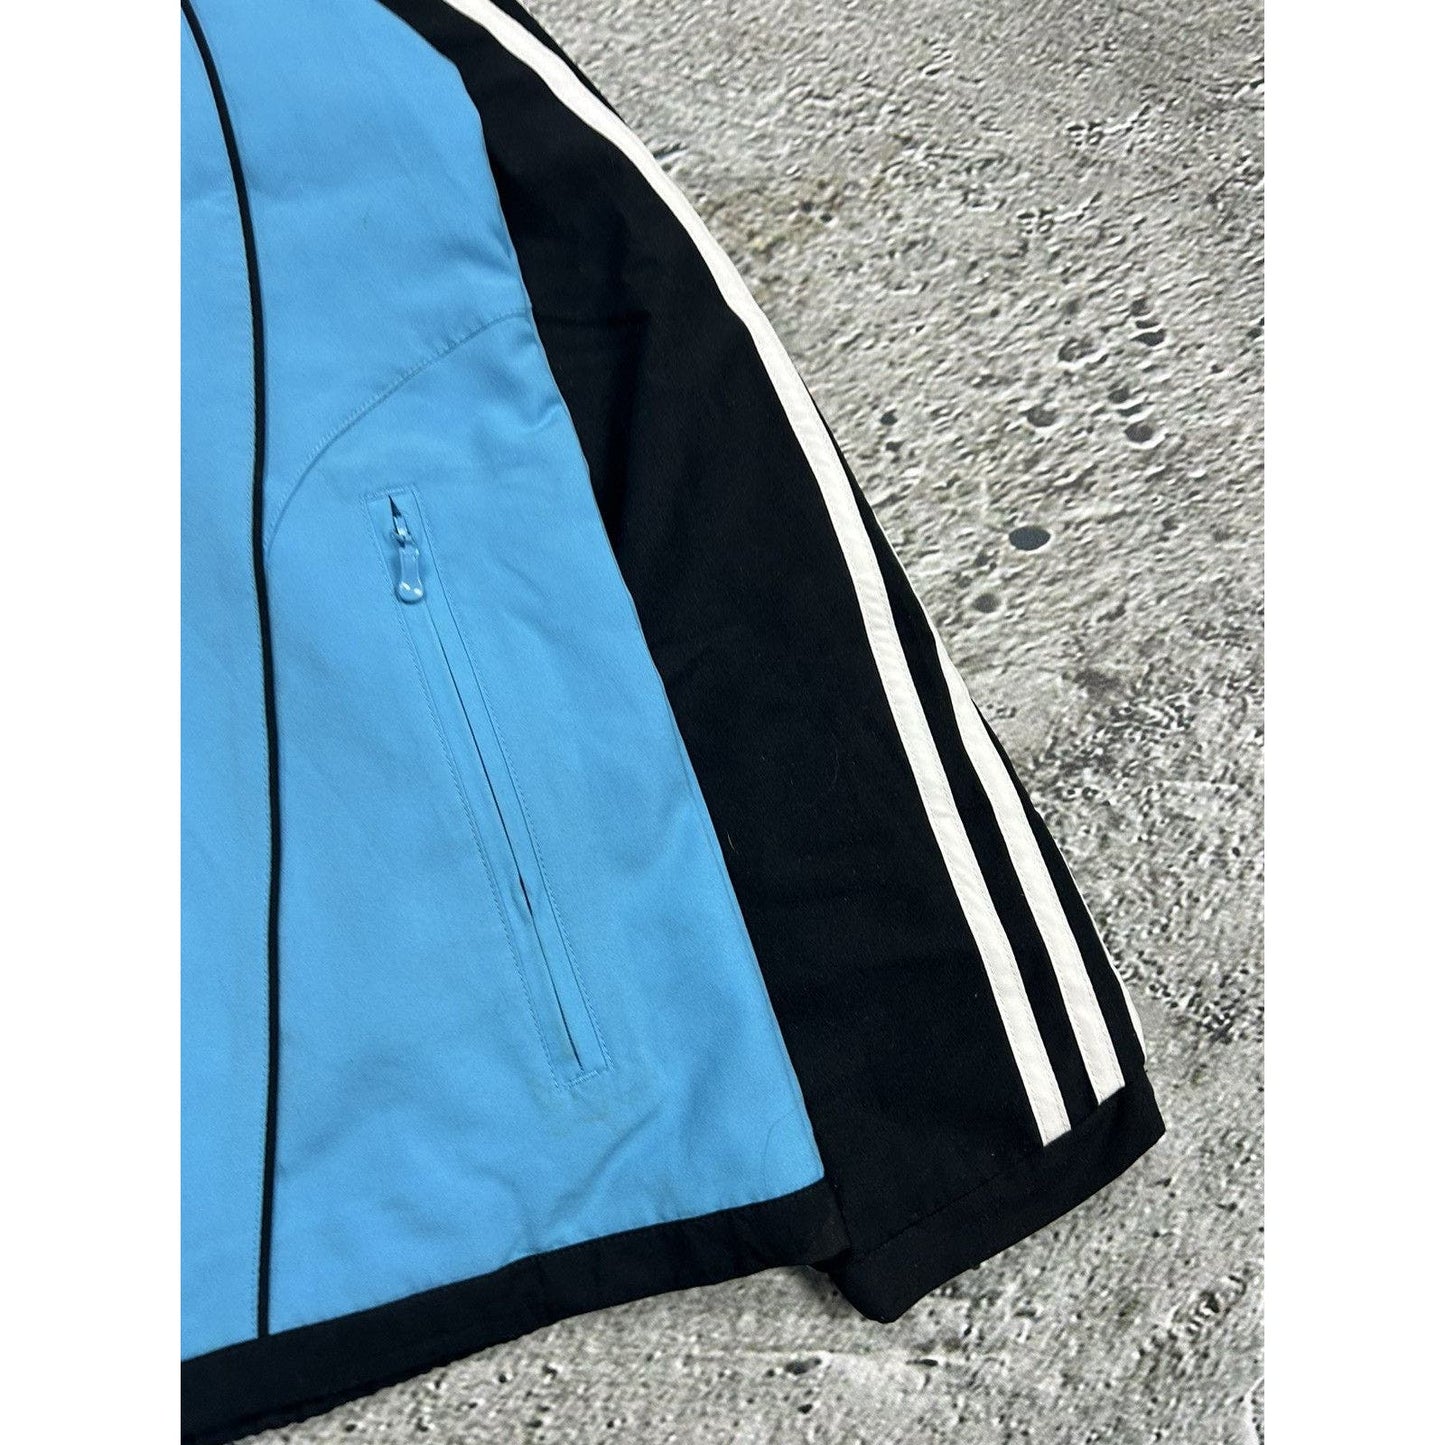 Marseille Adidas track suit black blue pants jacket vintage